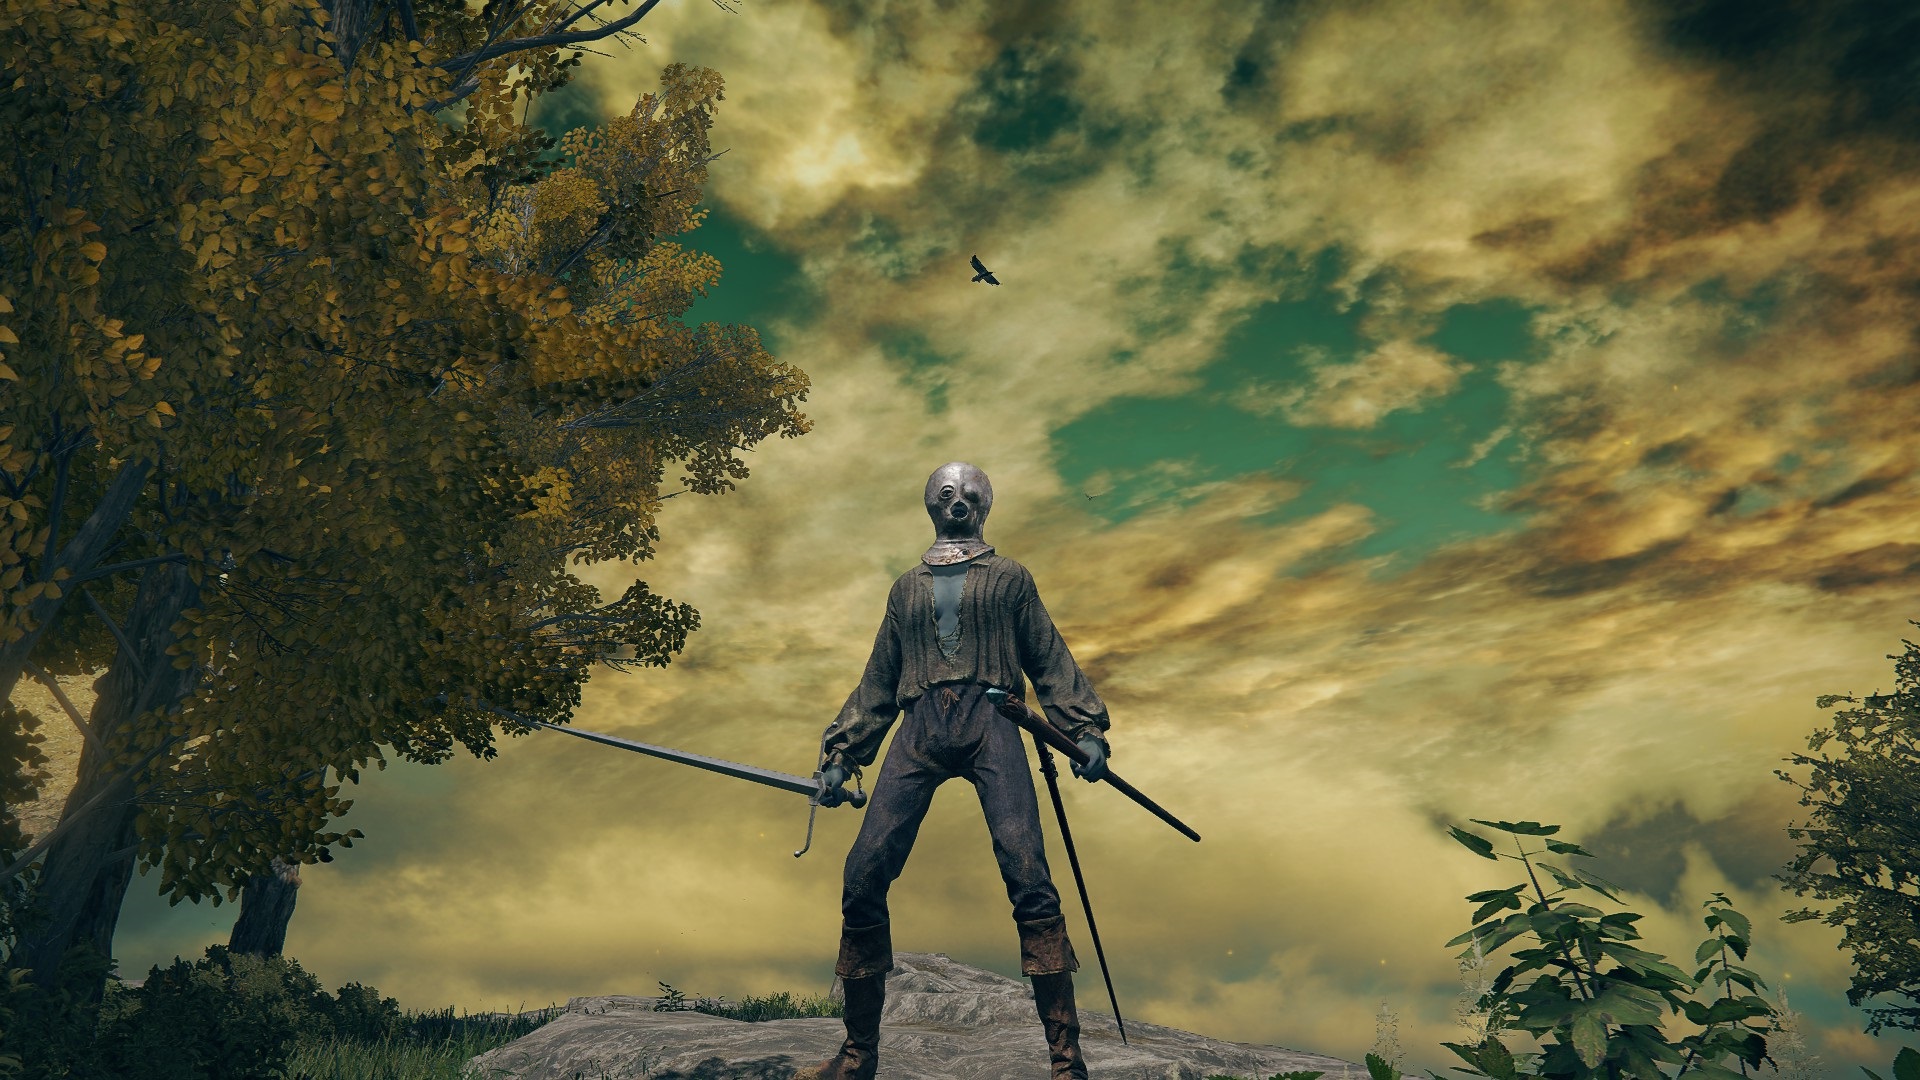 Класс Elden Ring — заключенный — стоит в Лимгрейве в своей металлической маске, рваной одежде и держит меч и посох.